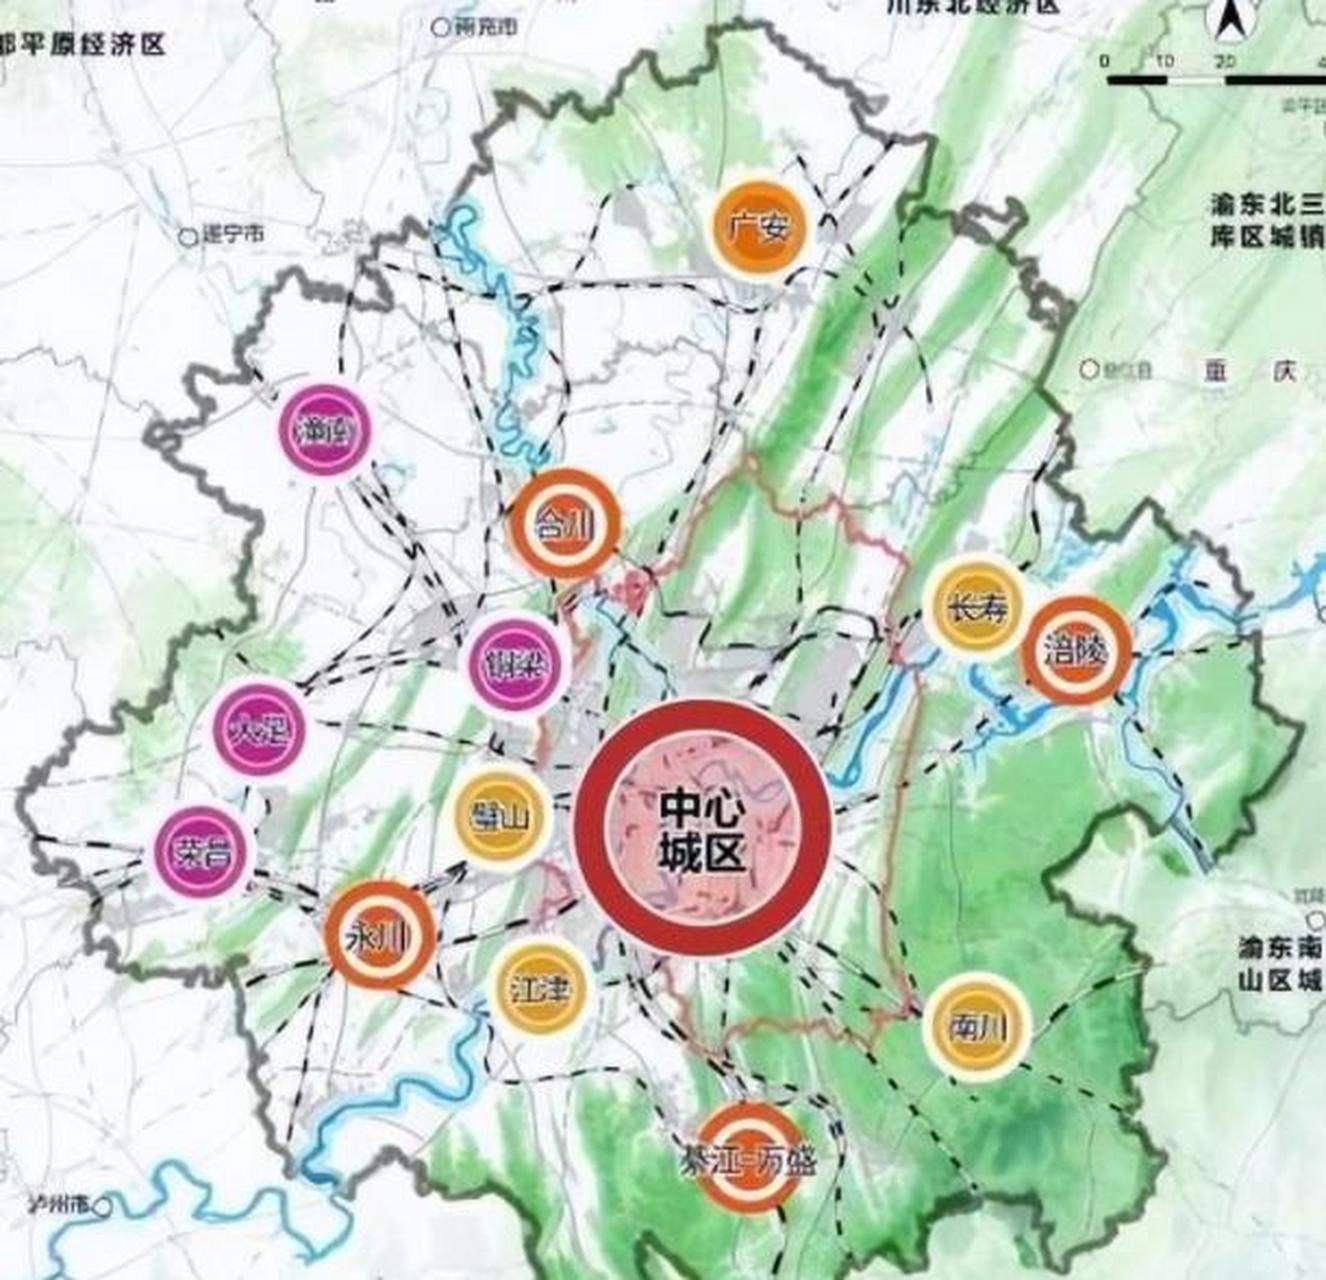 近日,新版重庆都市圈规划正式发布,该规划提出了一系列关于城市发展和